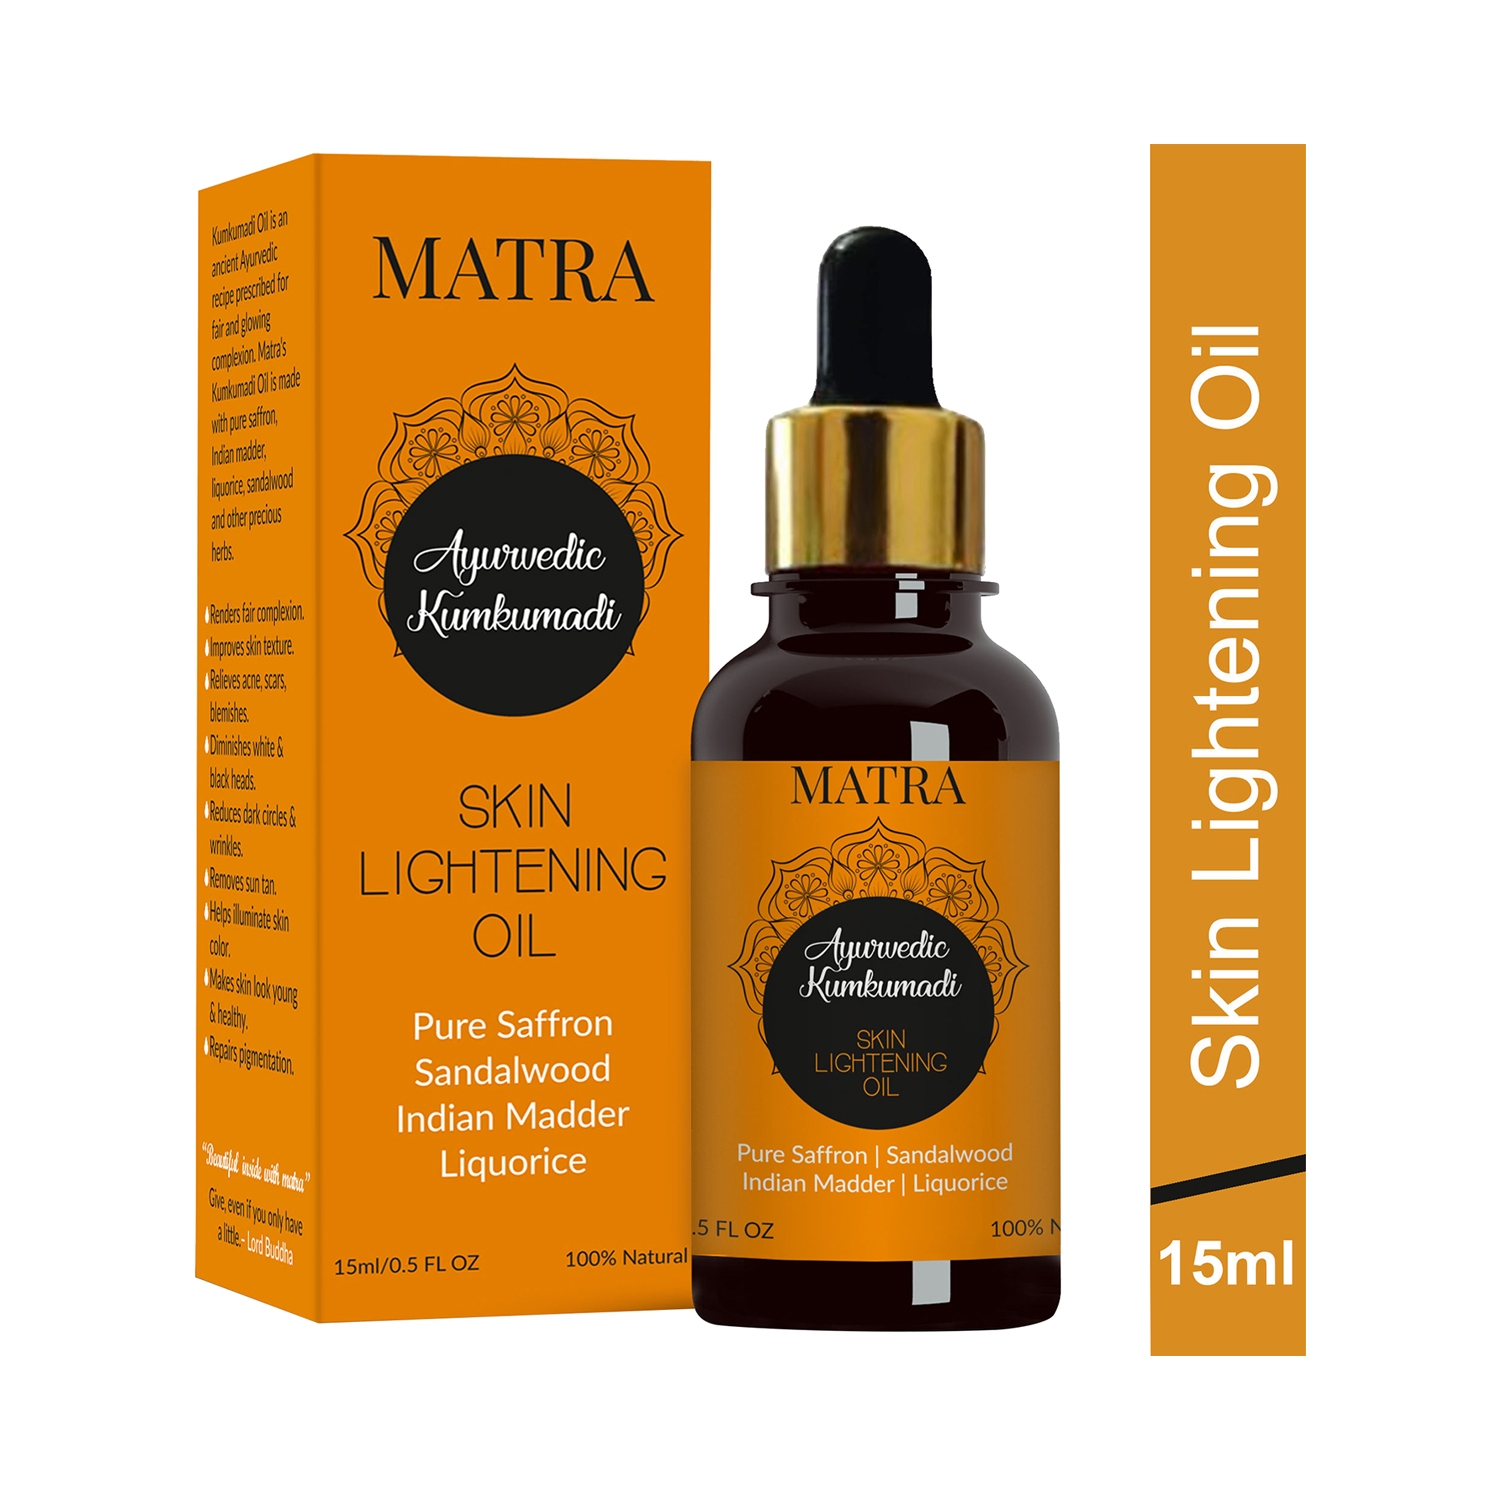 Matra Ayurvedic Kumkumadi Skin Lightening Oil (15ml)